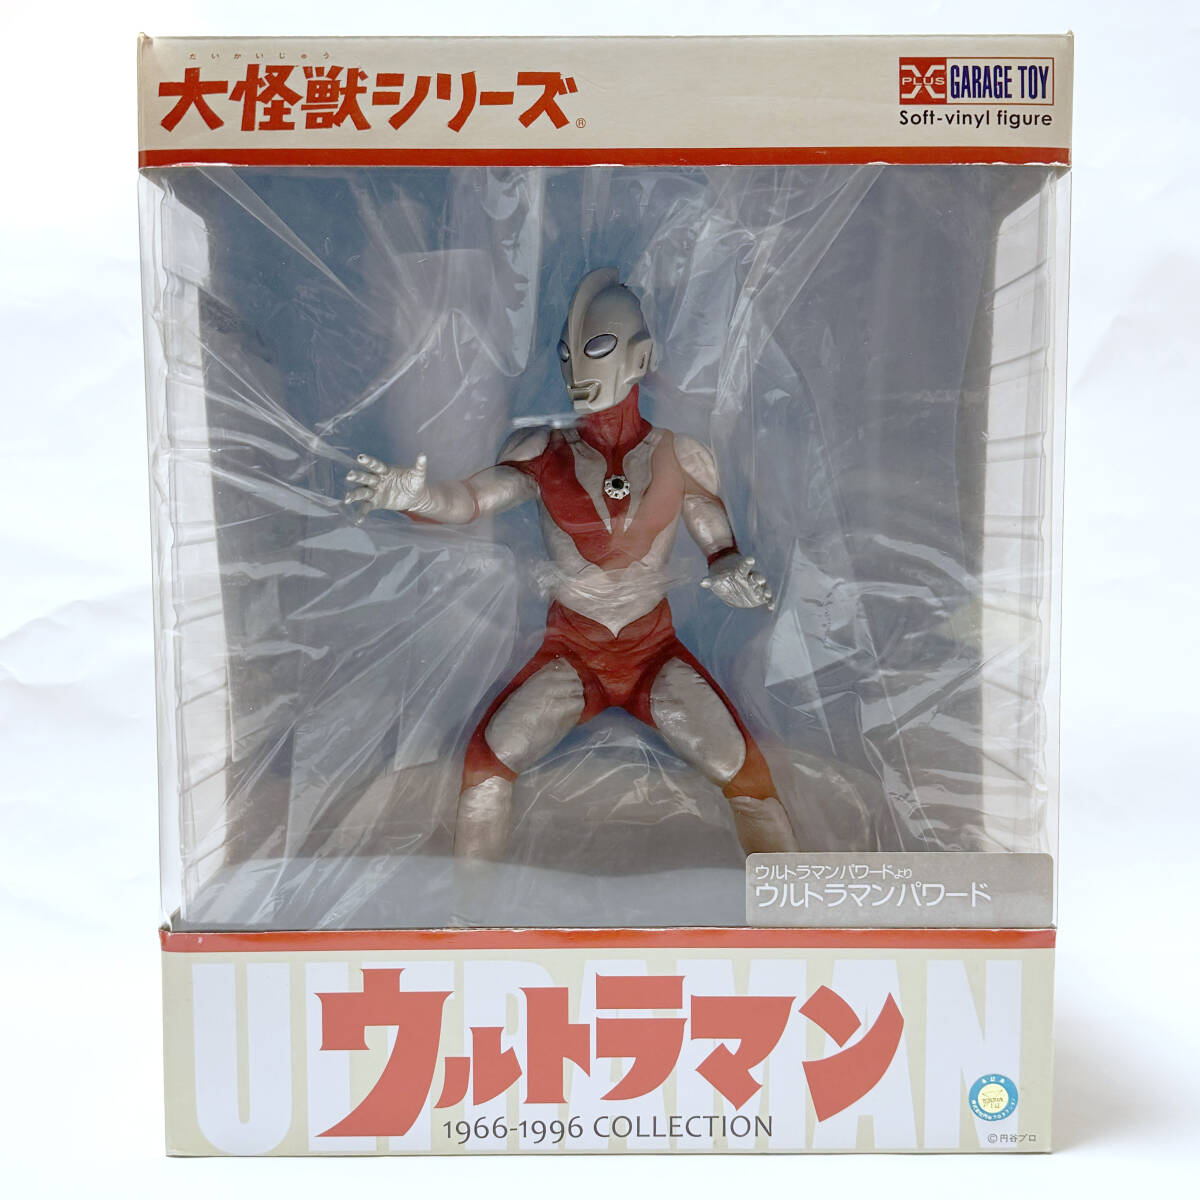  большой монстр серии [ Ultraman Powered ] обычная версия eks плюс |X-PLUS| sofvi фигурка 